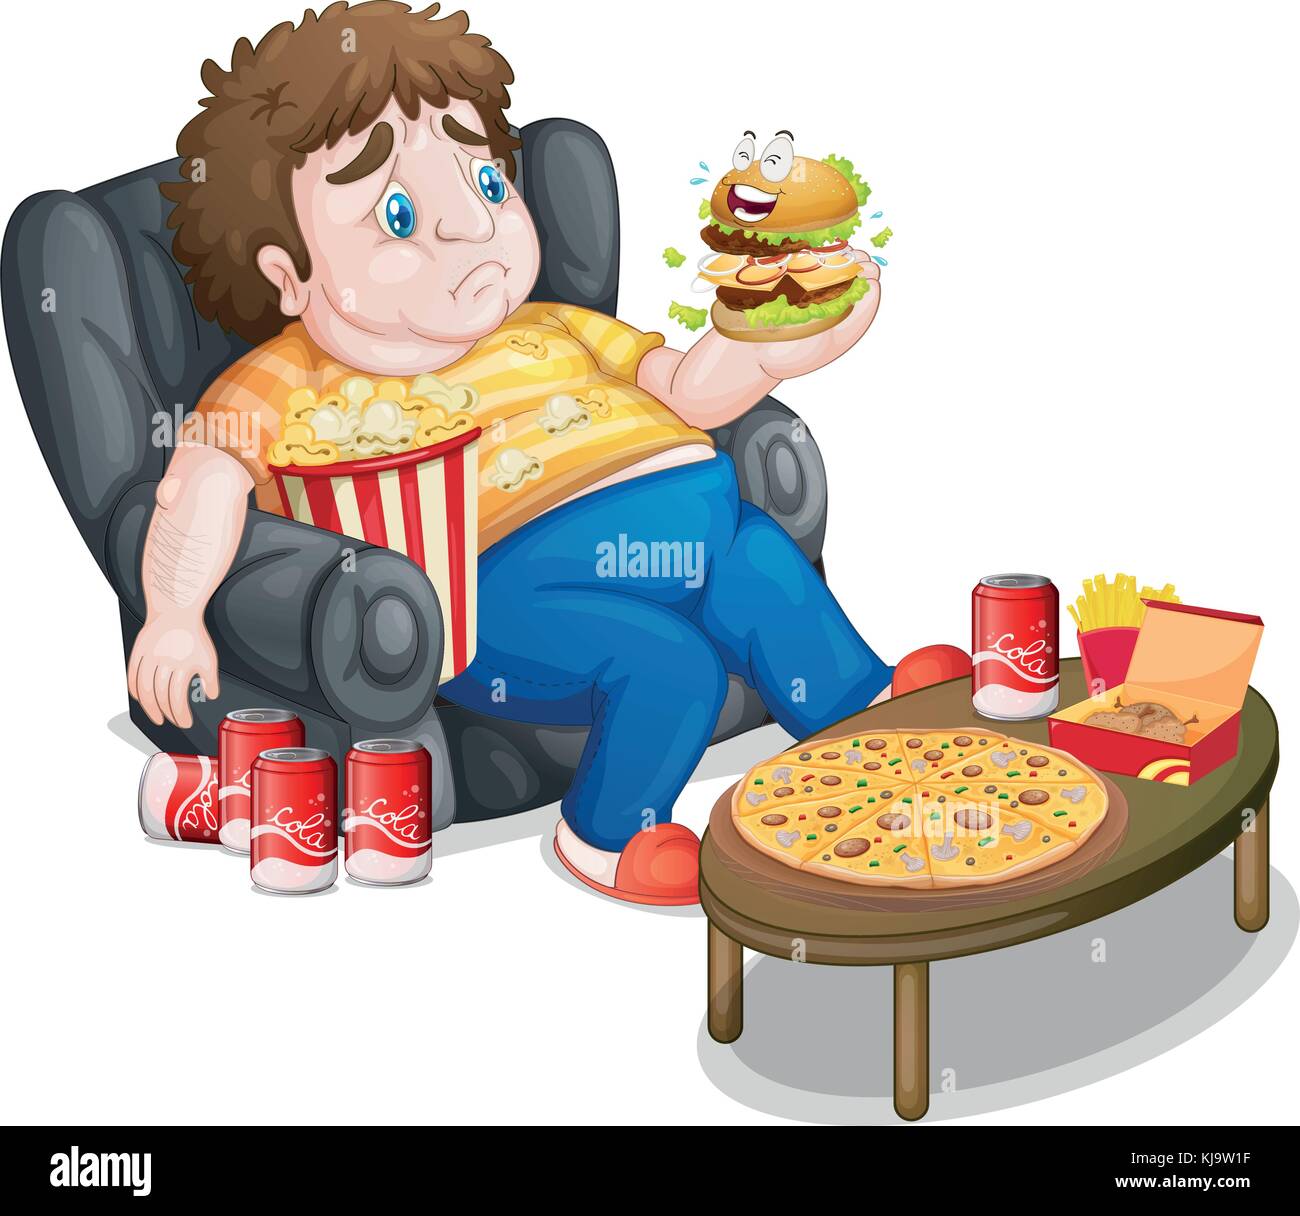 Abbildung: Fat Boy Essen auf weißem Hintergrund Stock-Vektorgrafik - Alamy